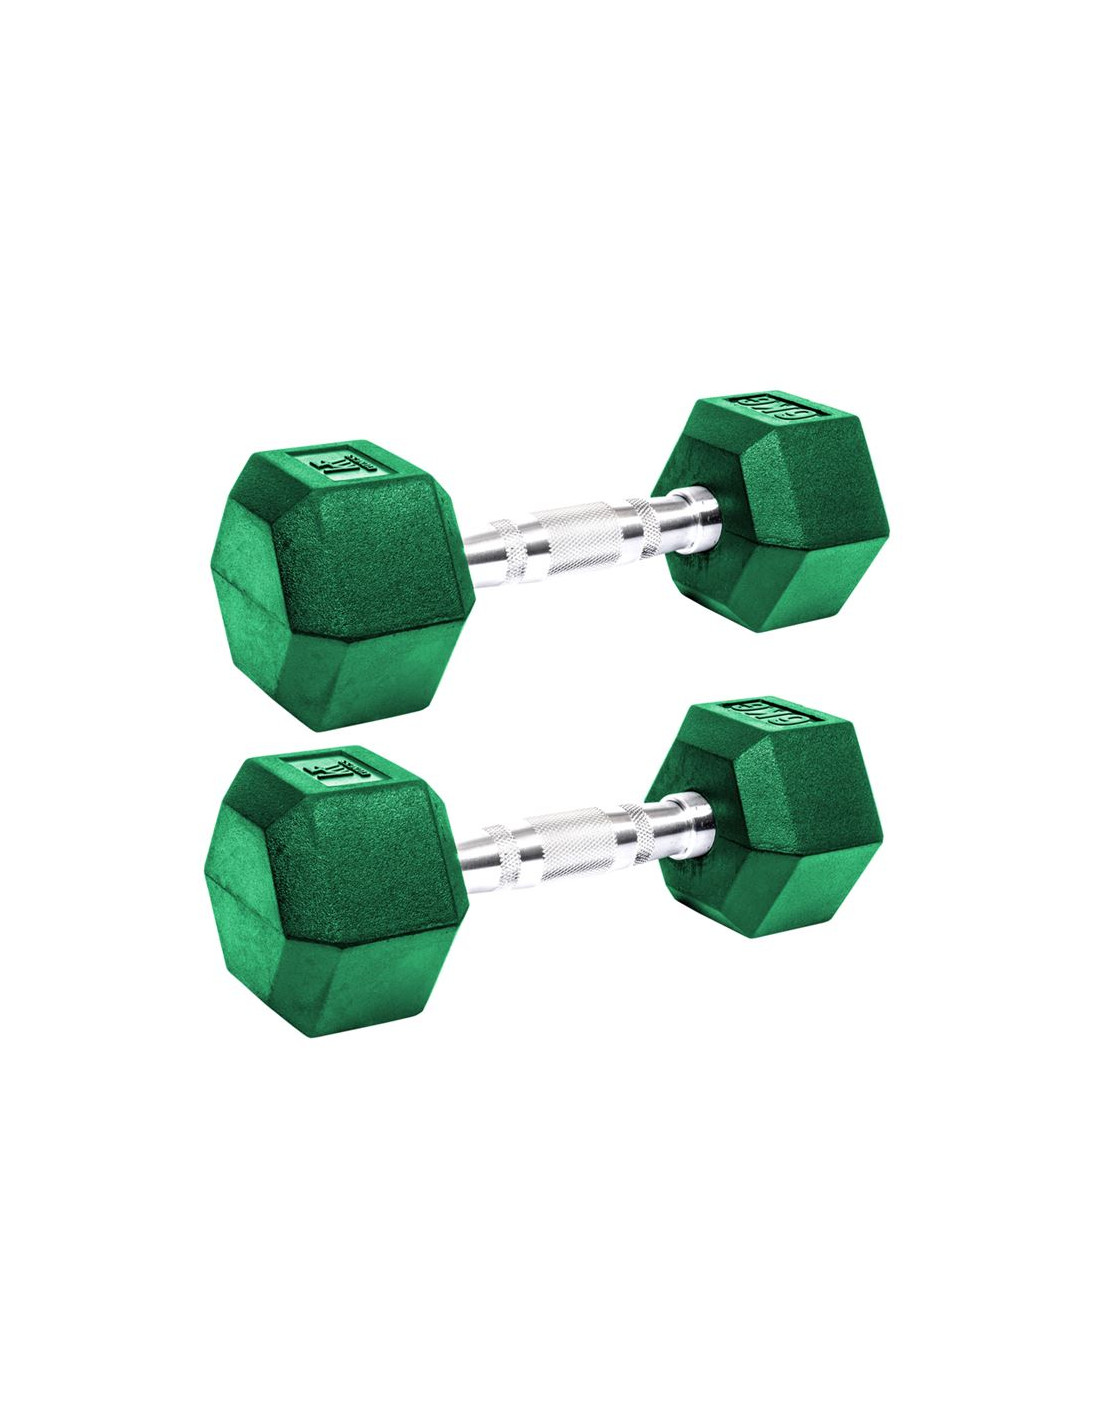 2 pesas hexagonales de caucho krf fitness 6 kg verde